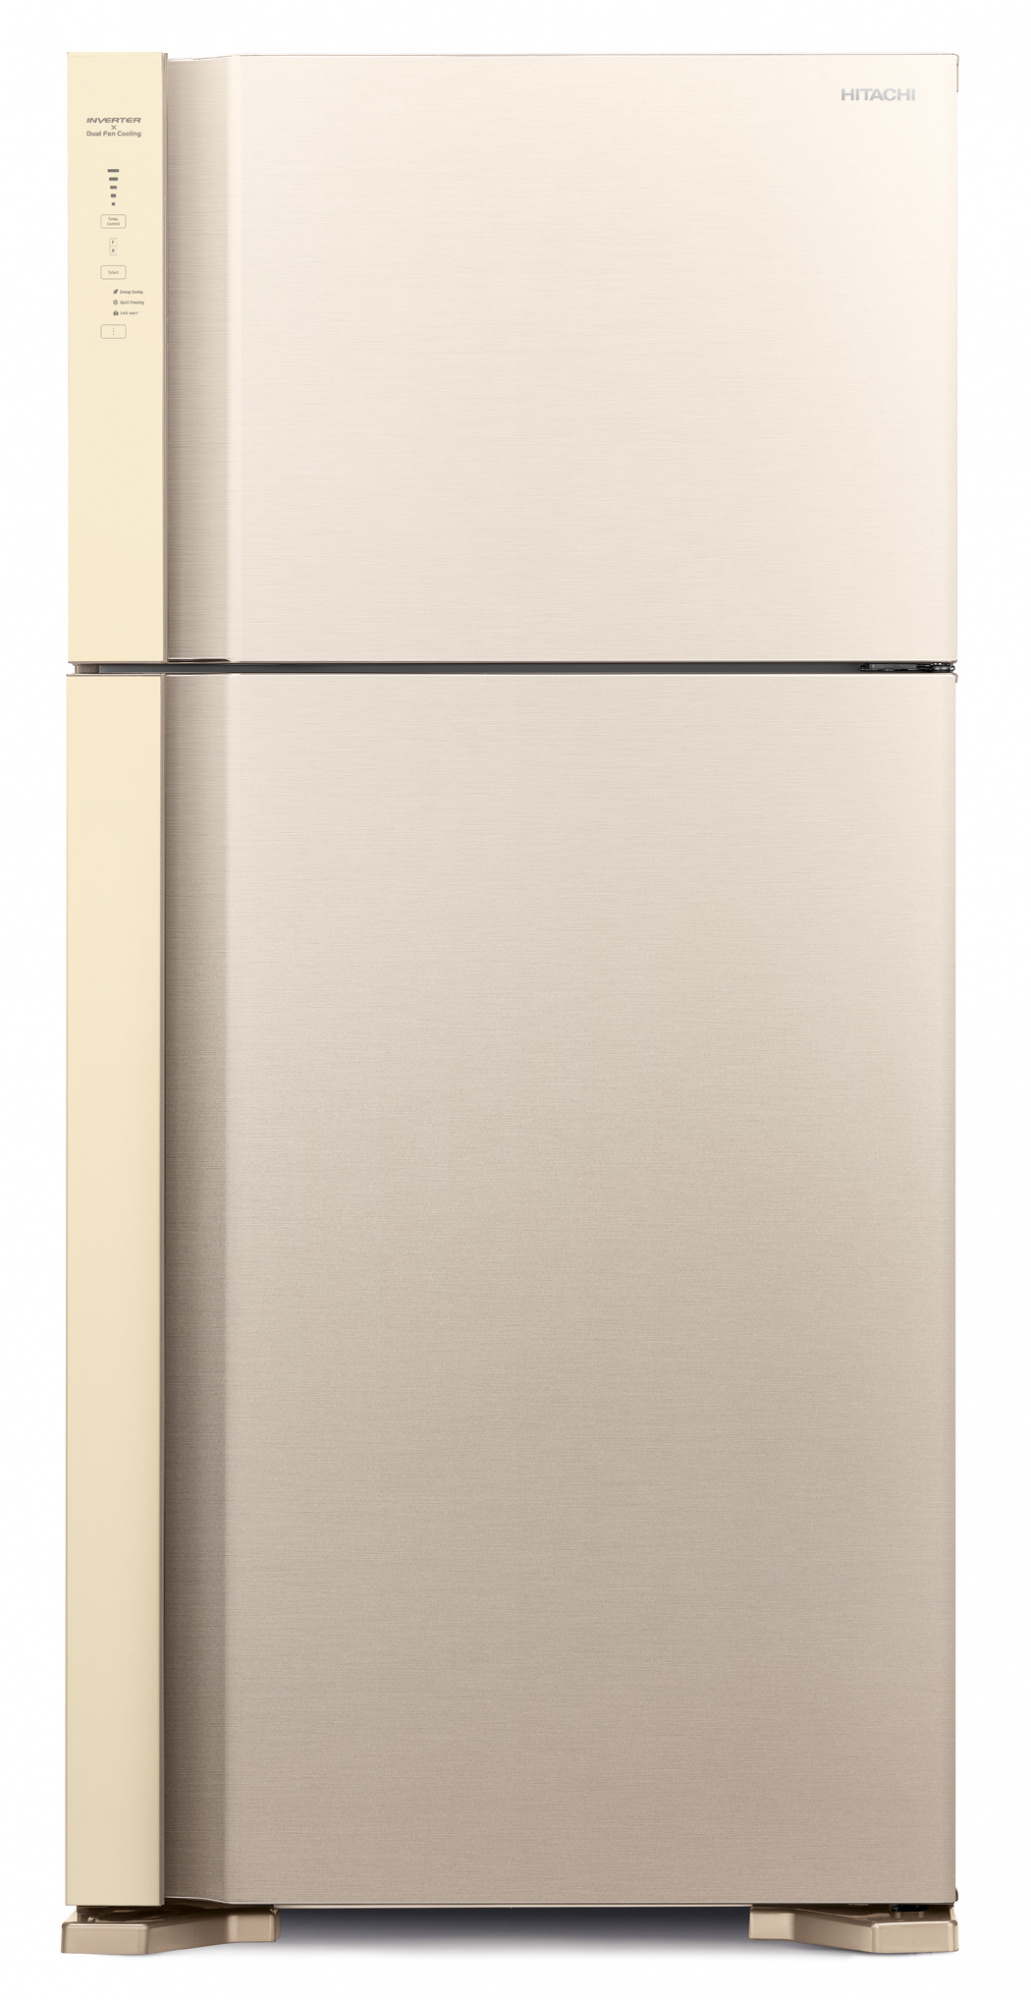 Холодильник Hitachi R-V660PUC7-1 BEG, бежевый 